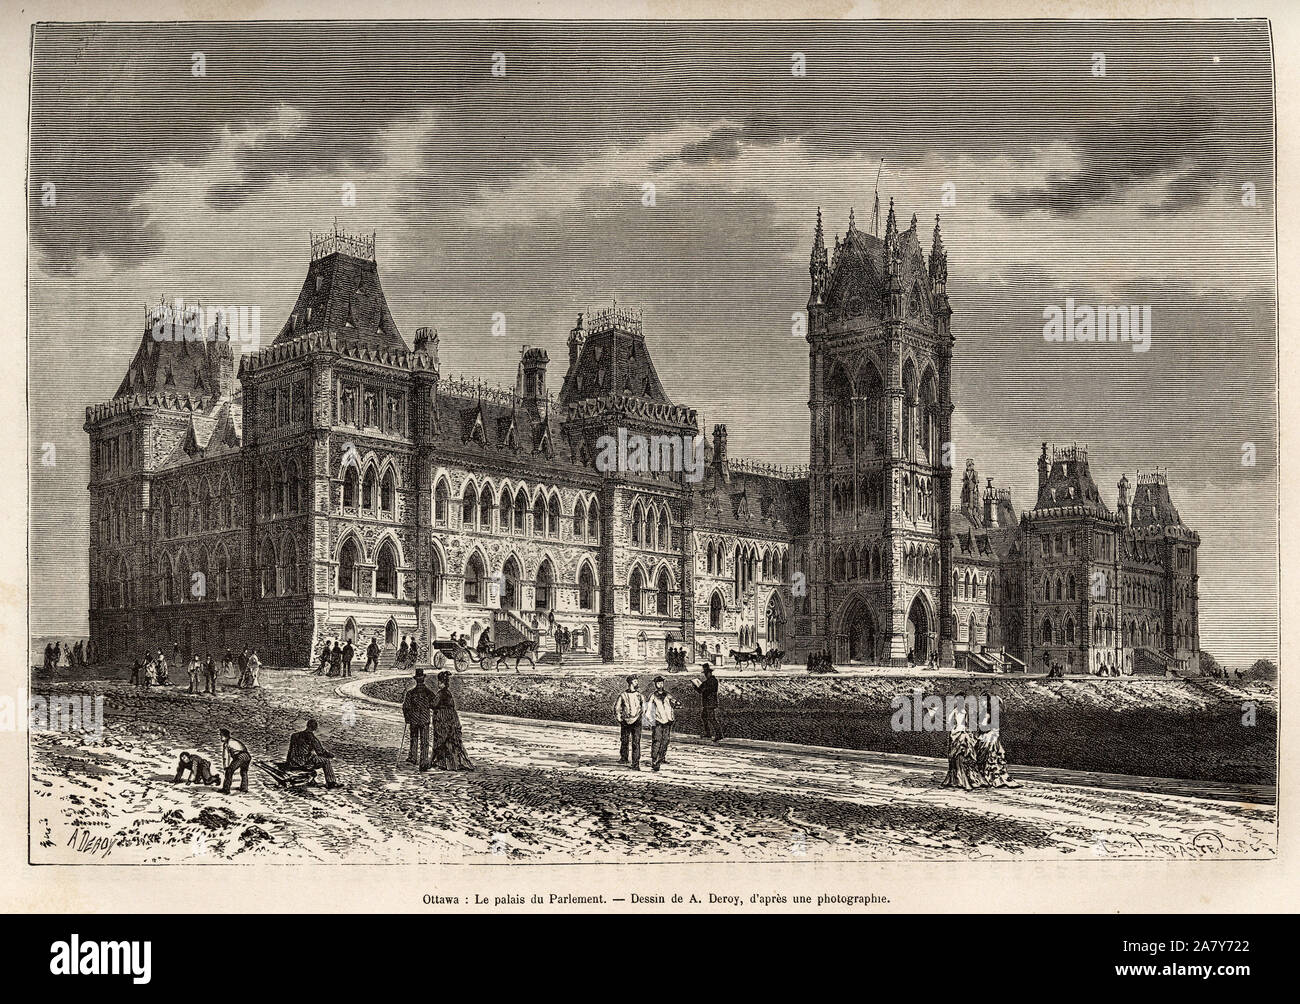 Le palais du parlement a Ottawa, construit entre 1859 et 1876, gravure d'apres un dessin de A.Deroy, illustrant l'excursion au Canada et a la riviere Stock Photo